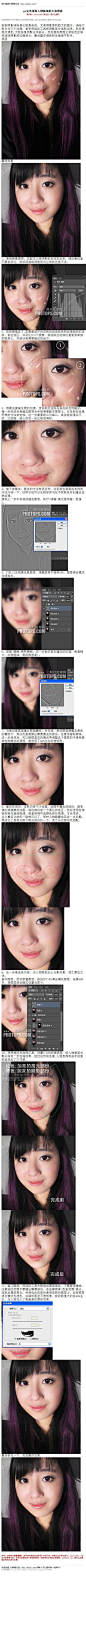 #杂质曝光#《photoshop完美消除人物脸部的大块阴影》 脸部阴影消除是比较复杂的，尤其阴影面积较大的图片。消除大致分为三个过程：首先用选区工具把阴影部分选取出来，然后调亮及调色,大致修复阴影主体部 教程网址：http://bbs.16xx8.com/thread-148119-1-1.html